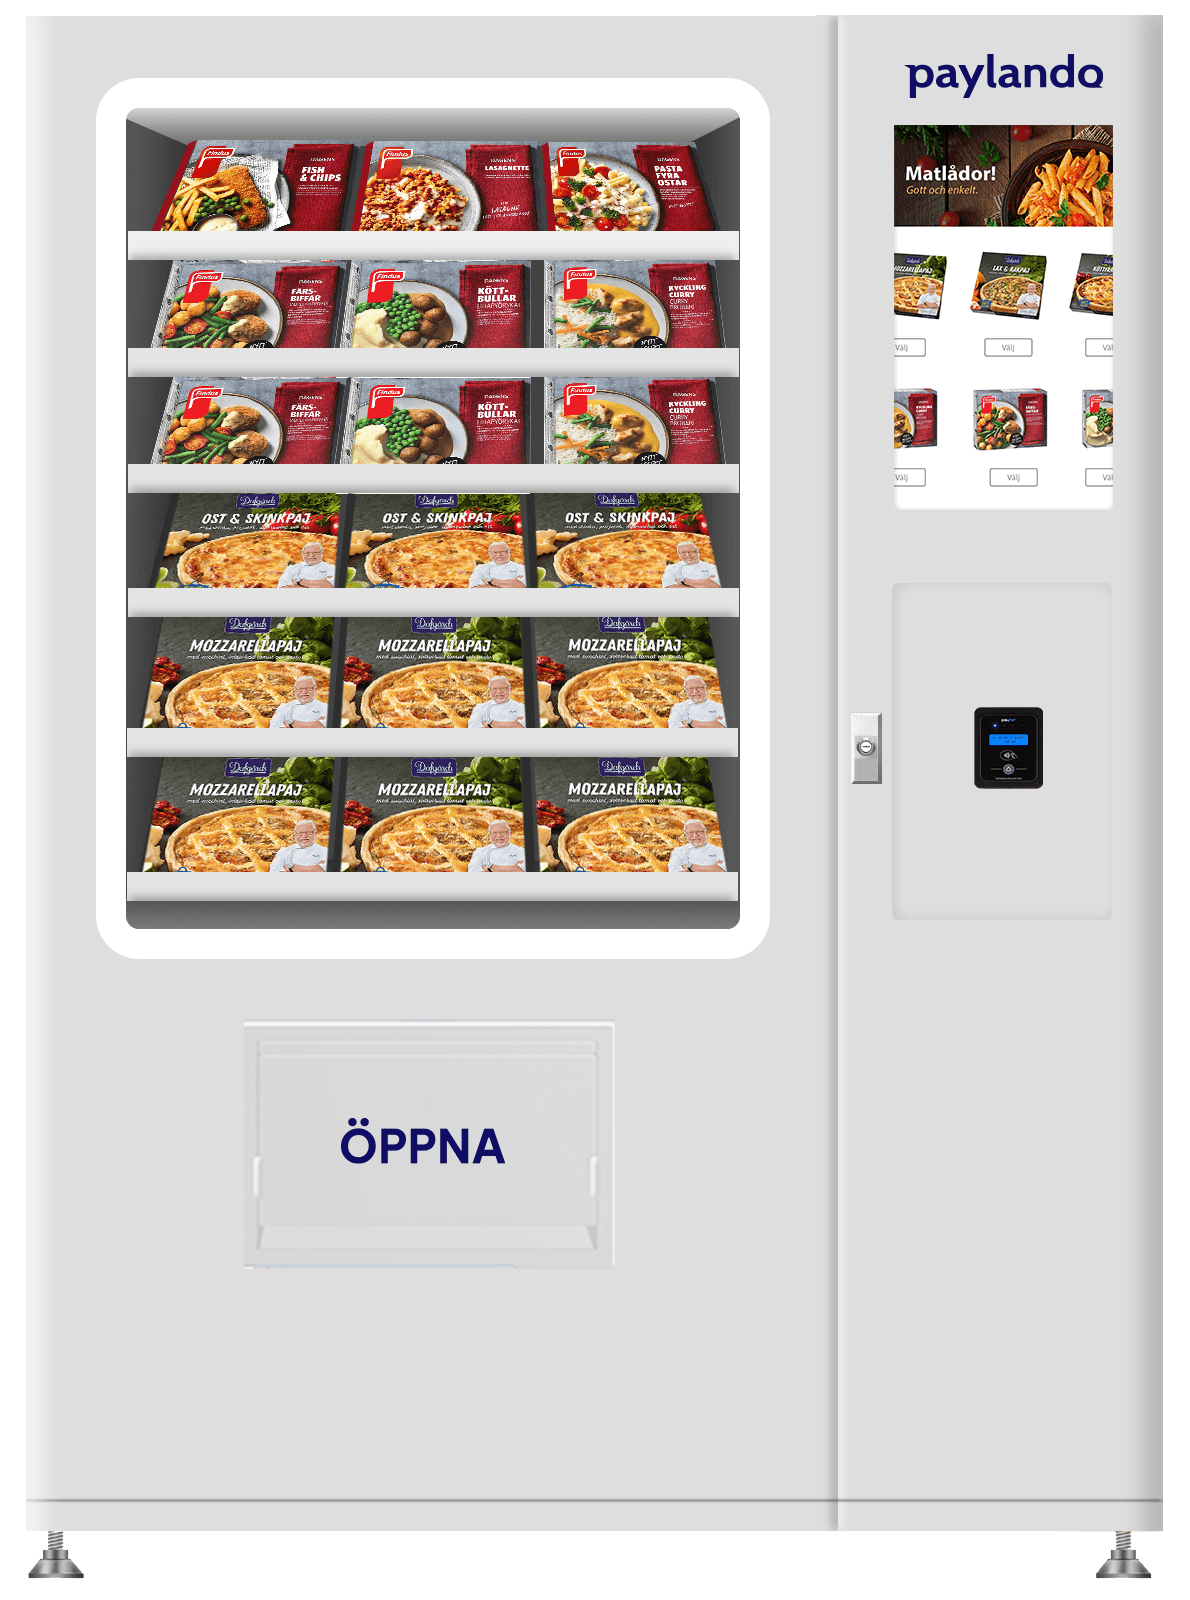 Paylando Maxi Combo: Kyld varuautomat med hiss för både mat och dricka